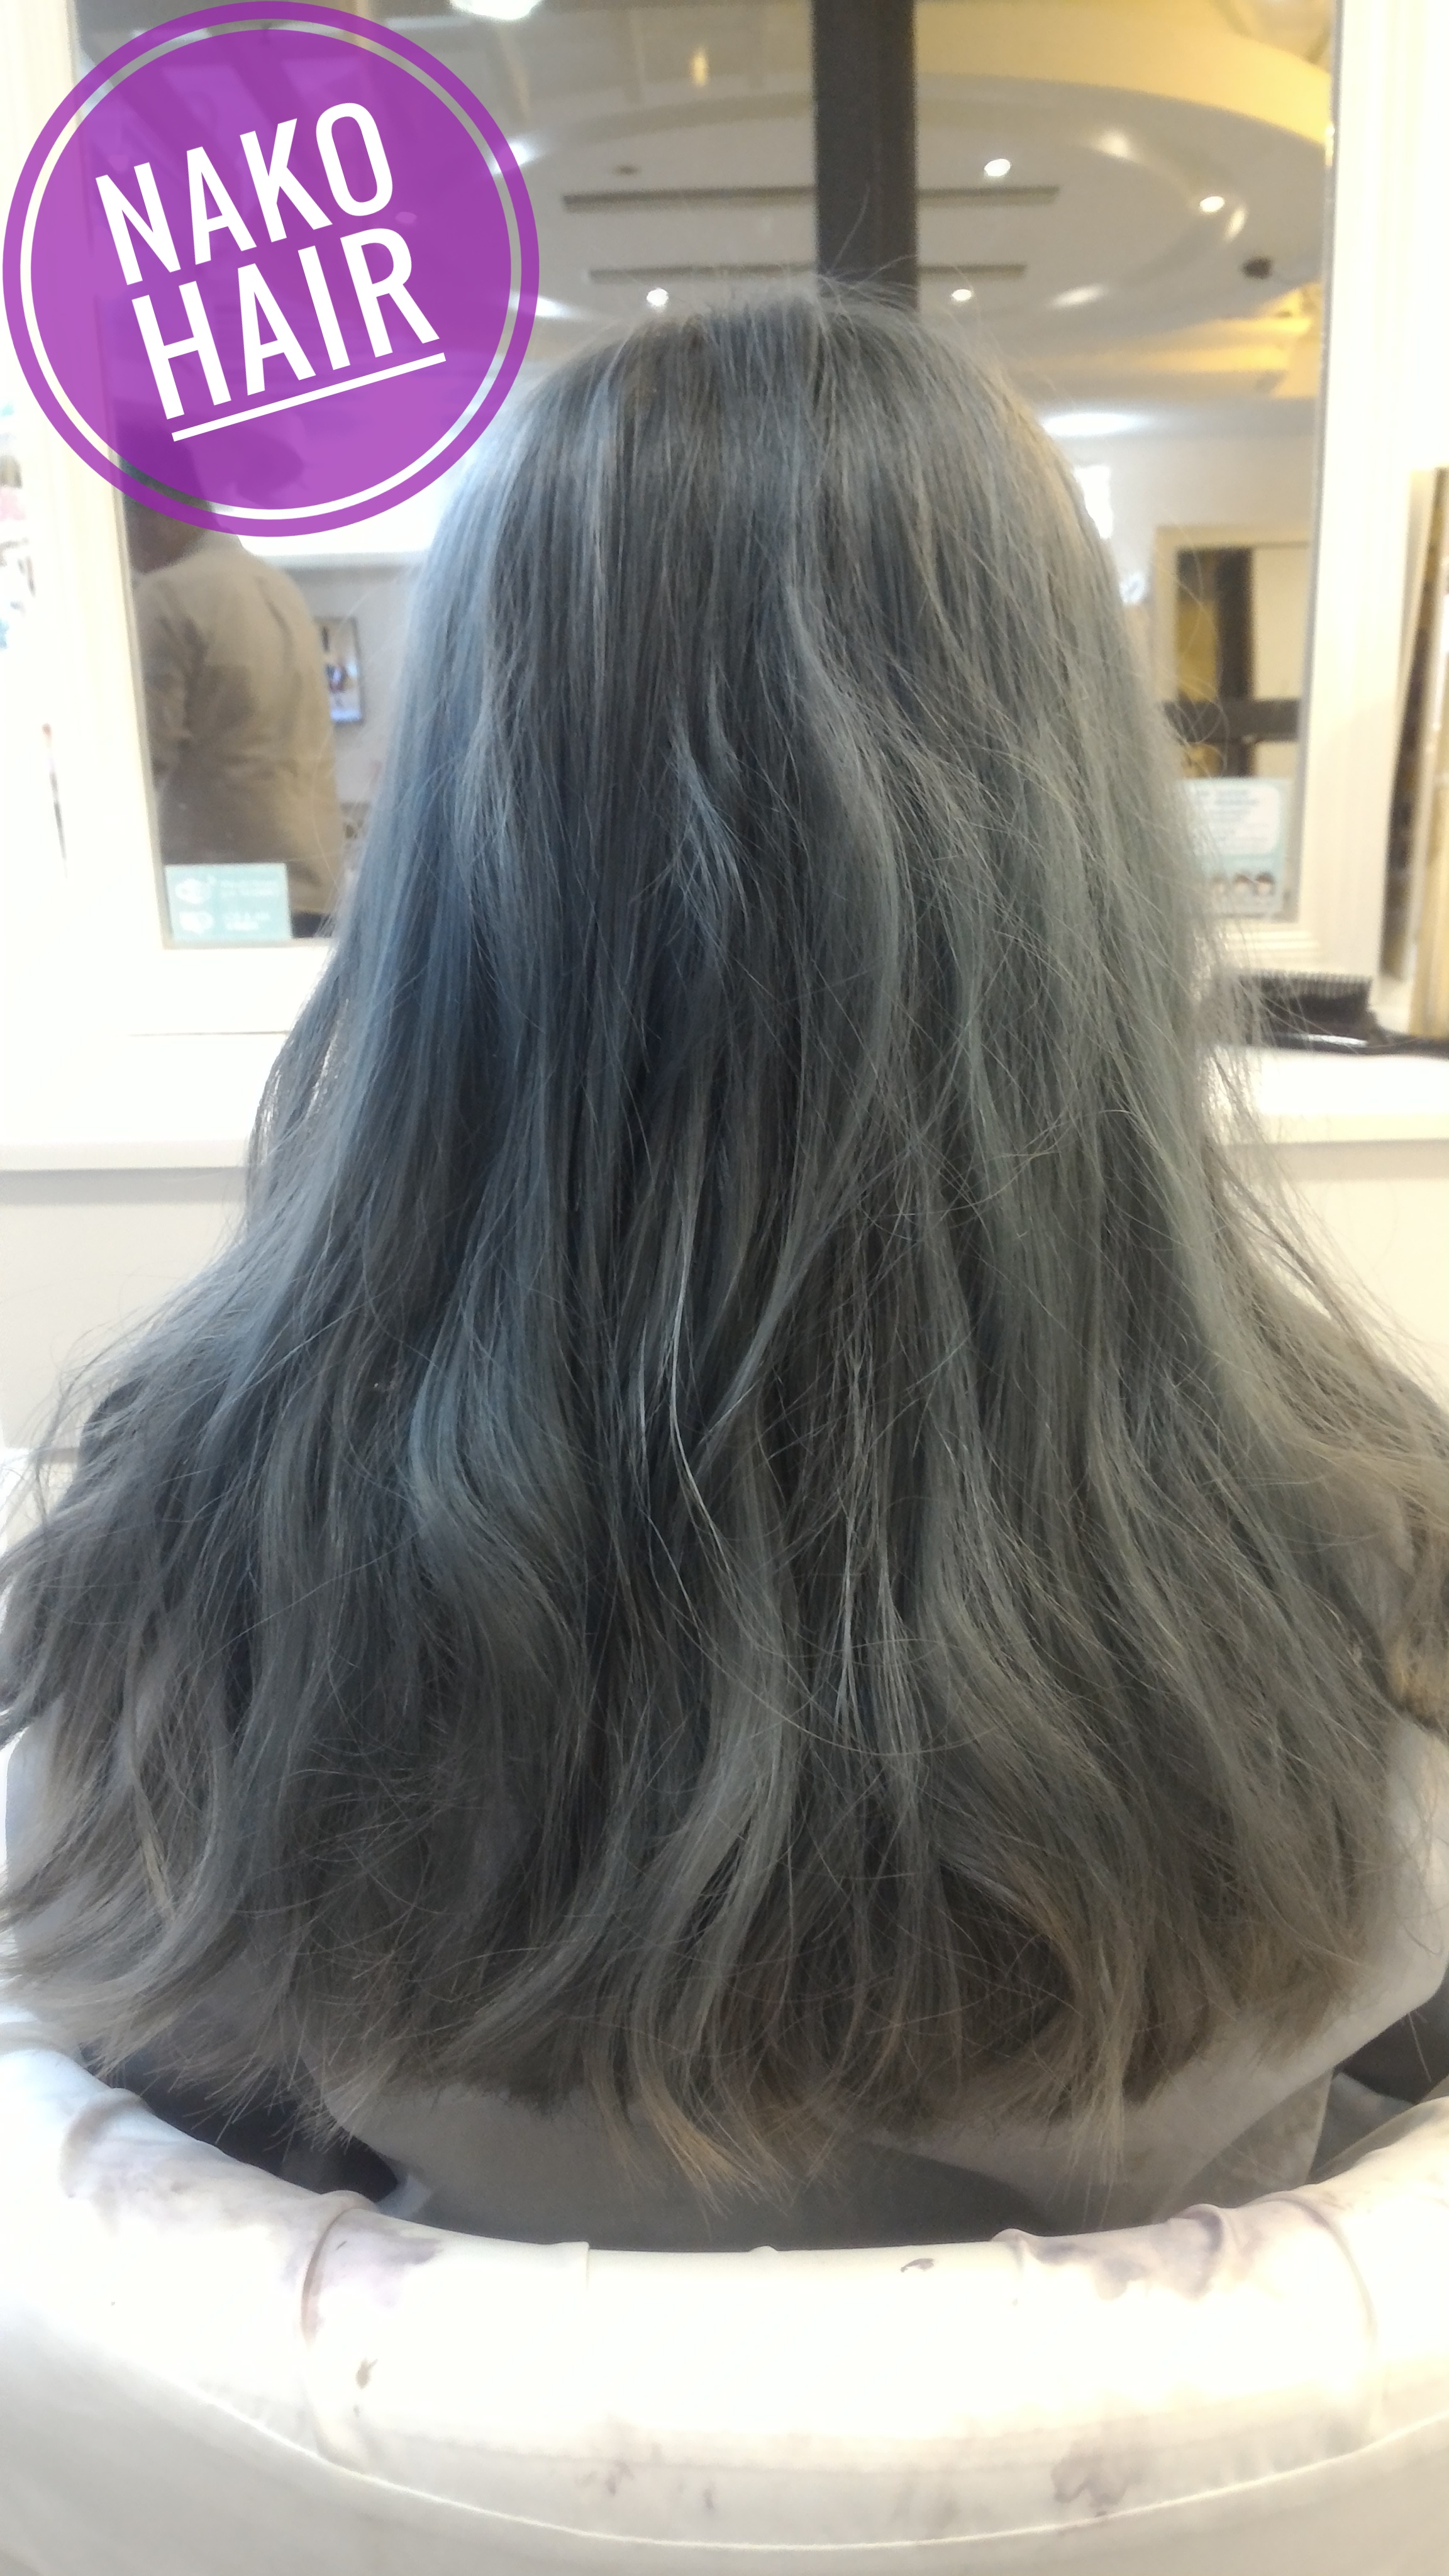 髮型作品参考:日本風(長度)髮型(灰色)